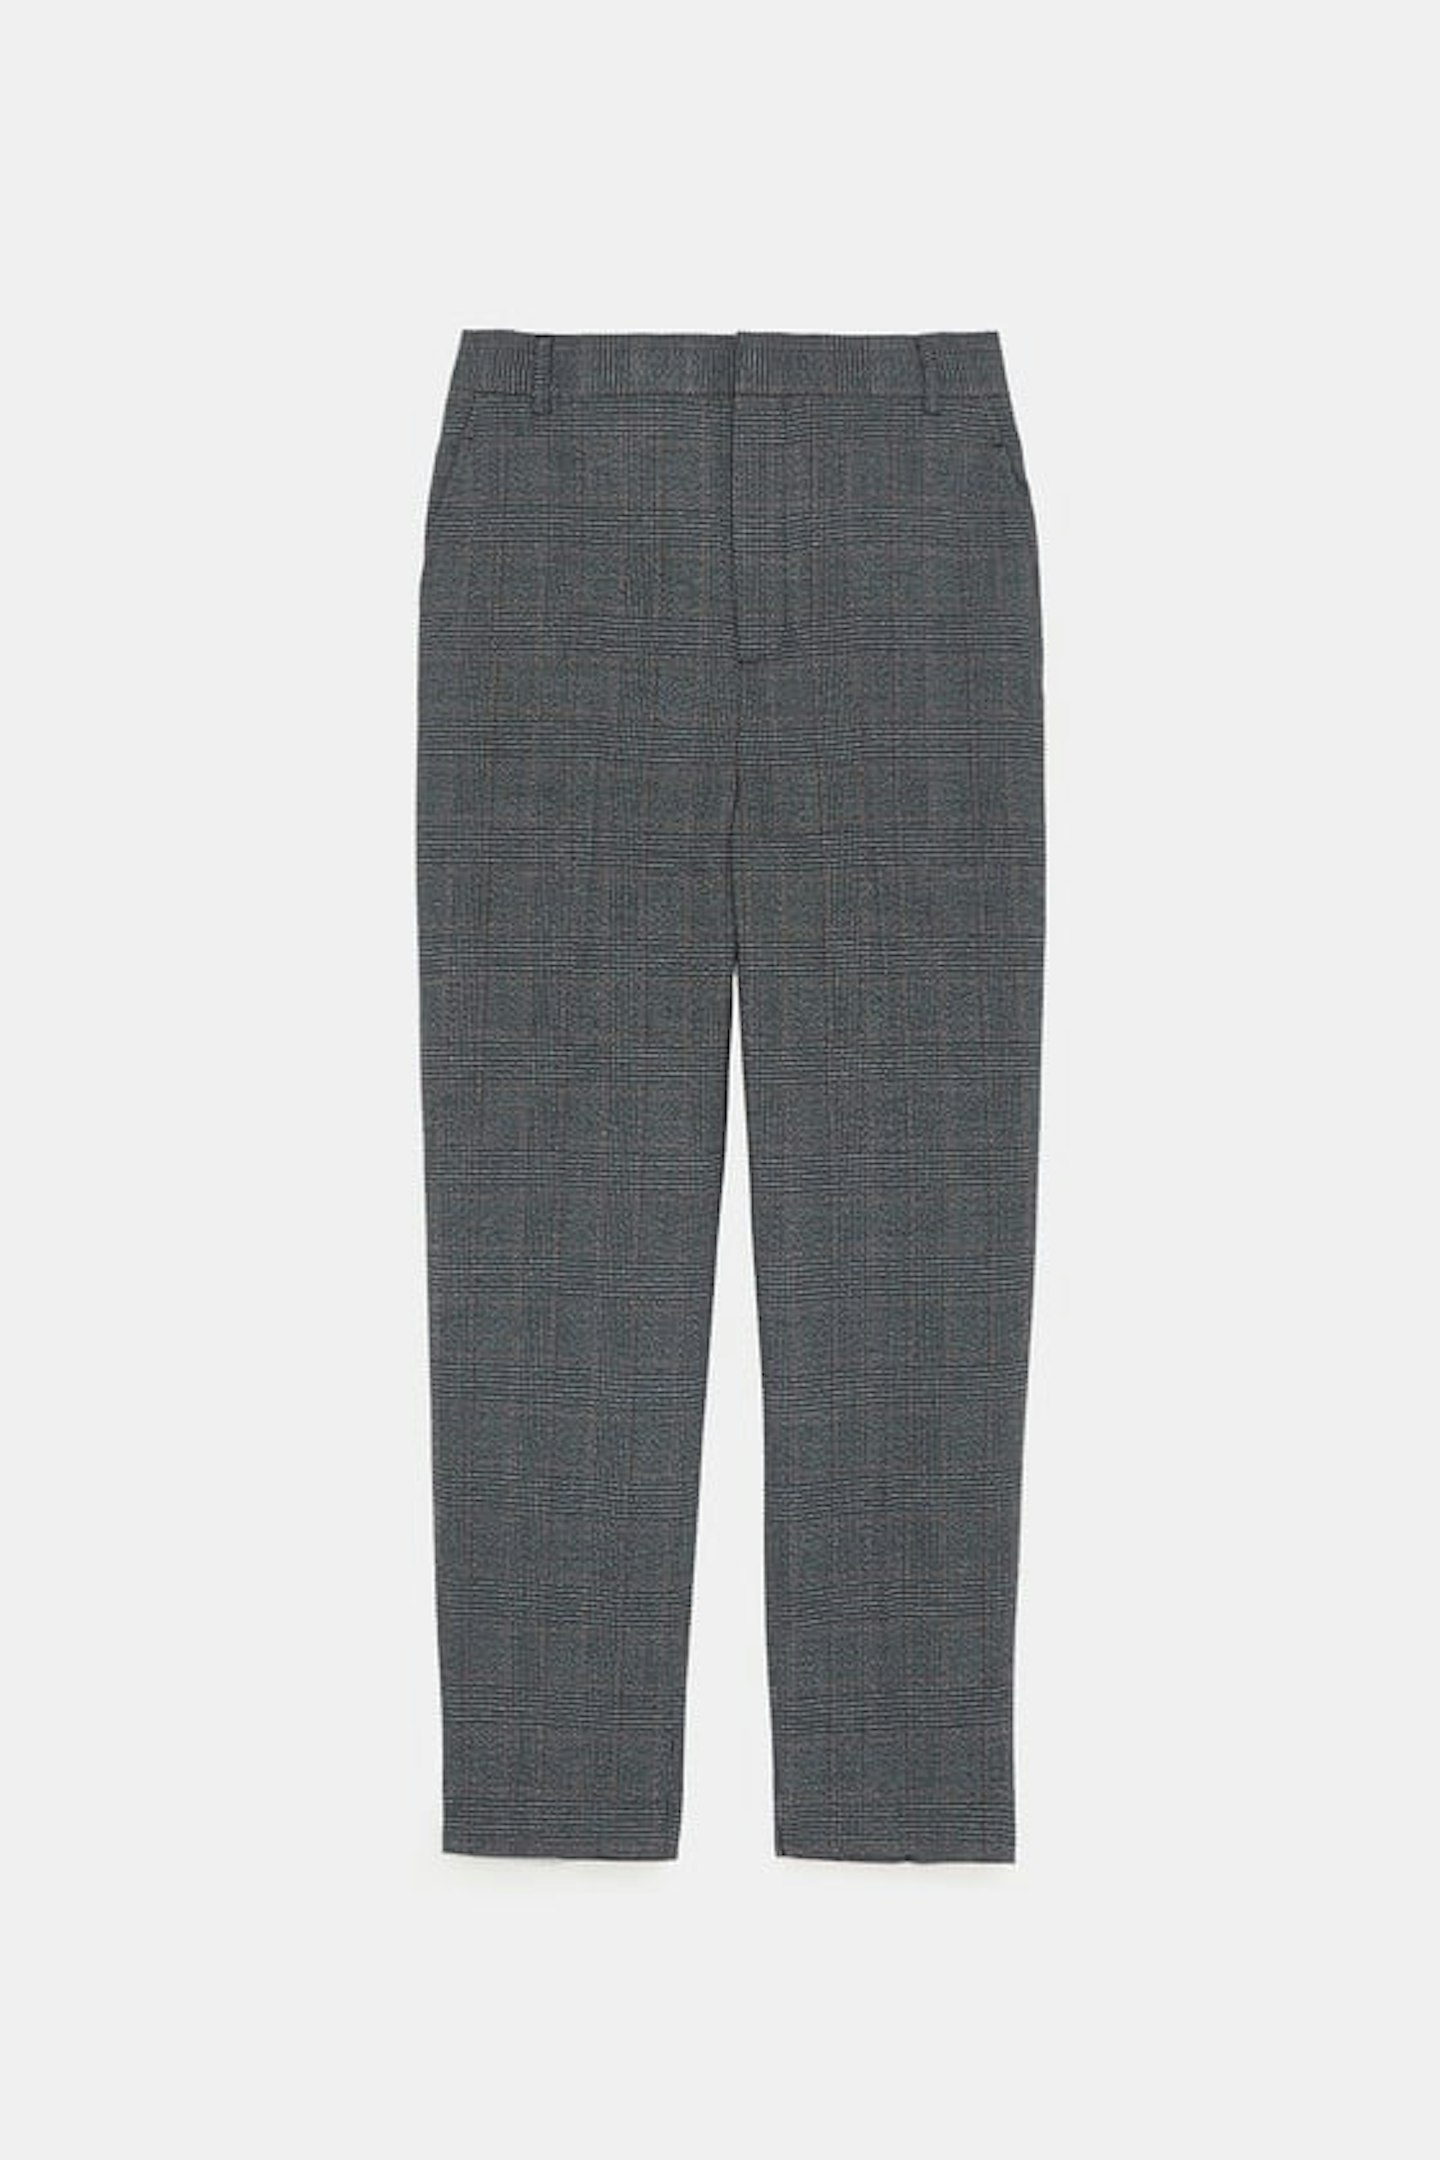 Zara, Check Trousers, £29.99